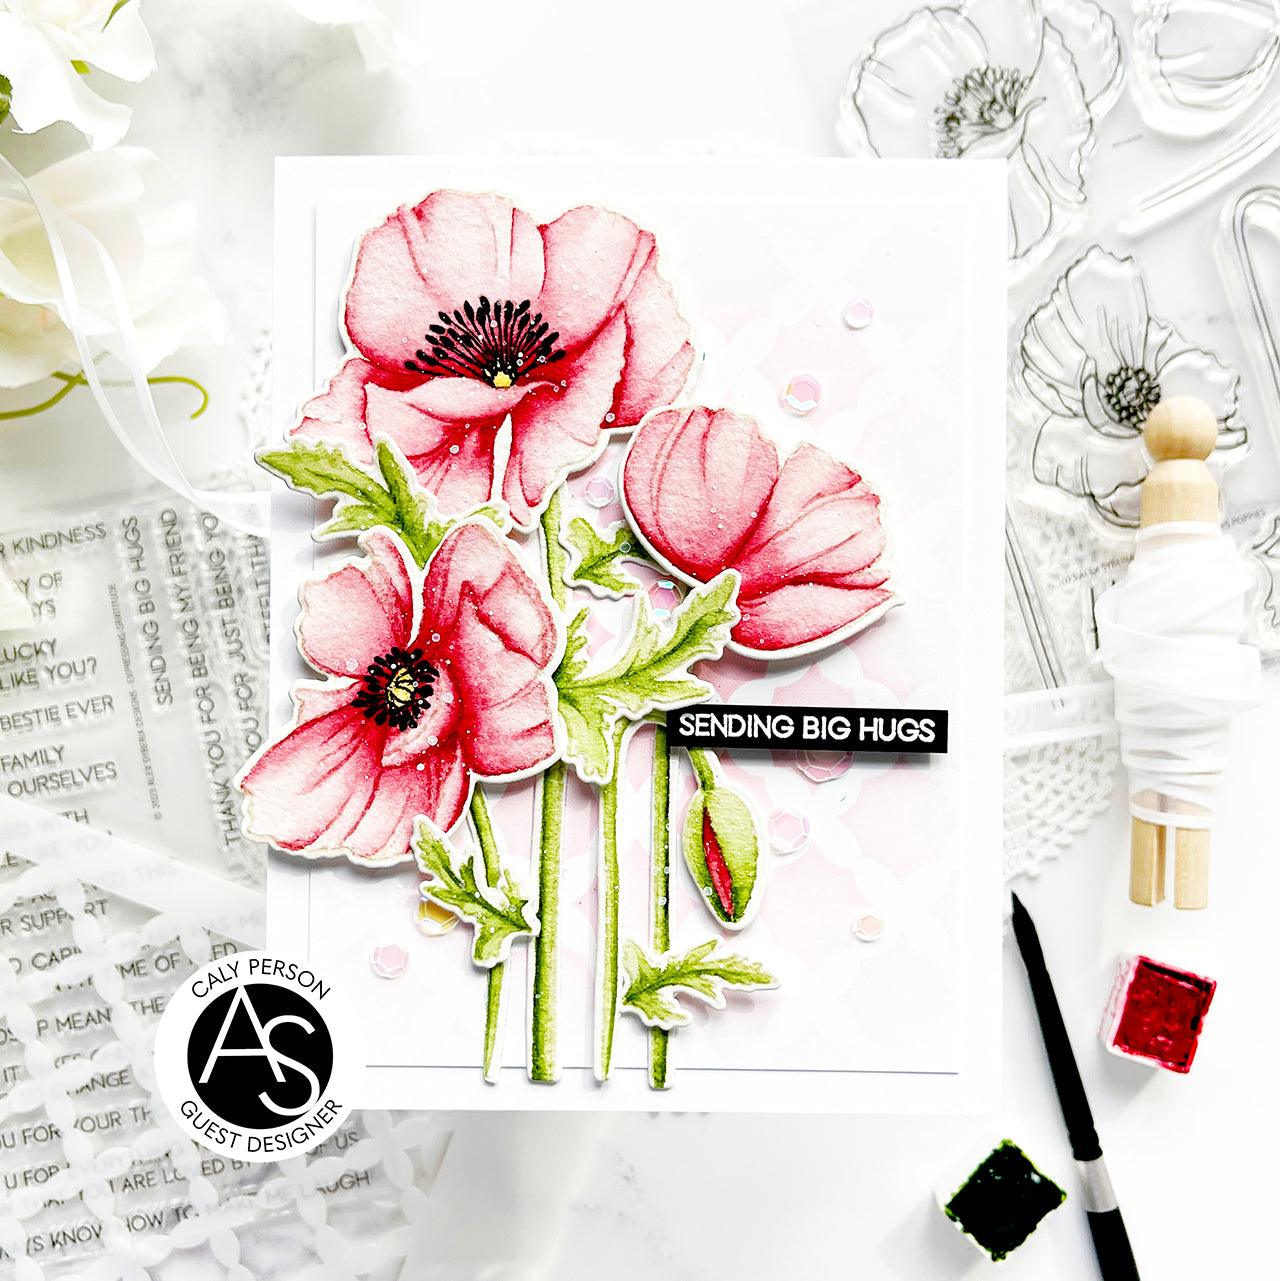 Alex-syberia-designs-poppies-flowers-stamp-dies-love-valentines-friend-cardmaking-handmadecards-scrapbook-shop-tutorial-cardmakers-coloring-watercolors-handmadecards-embossing-powder